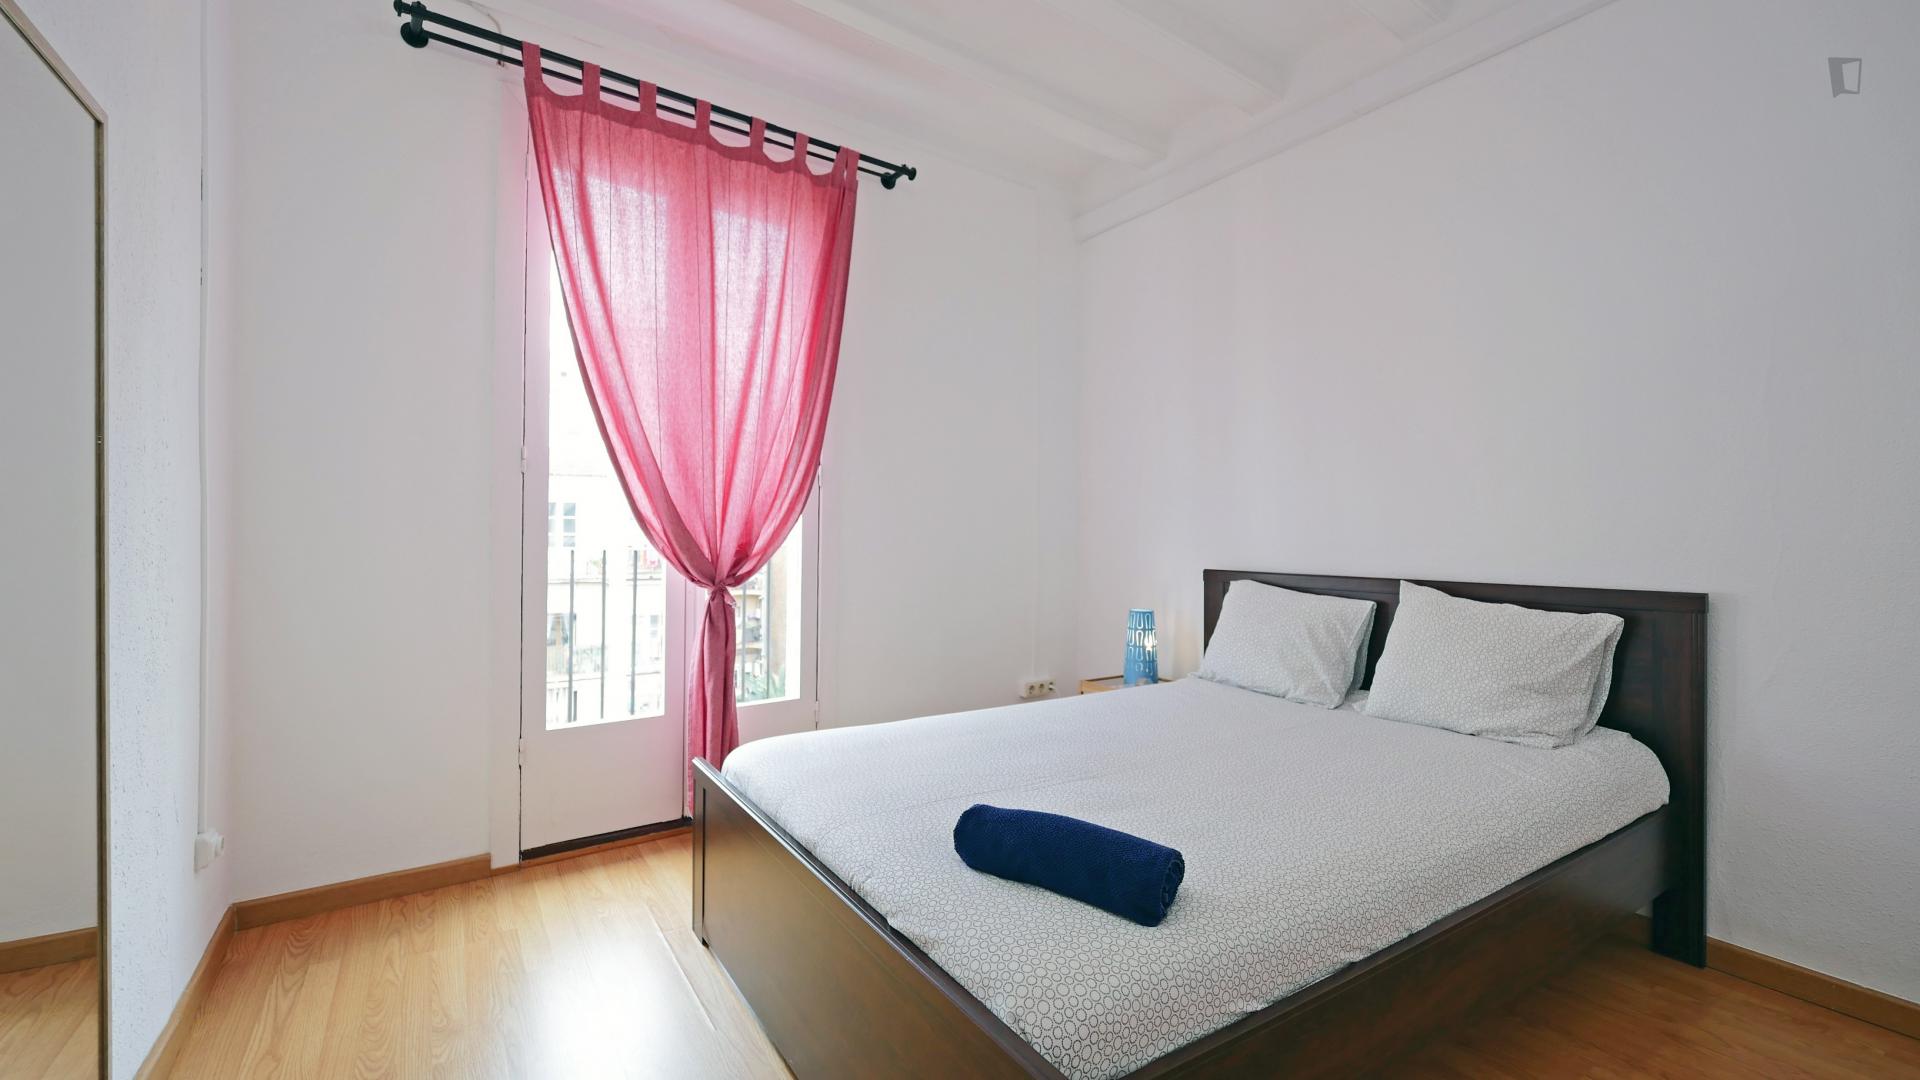 Ferlandino - Bedroom in a shared flat in Barcelona